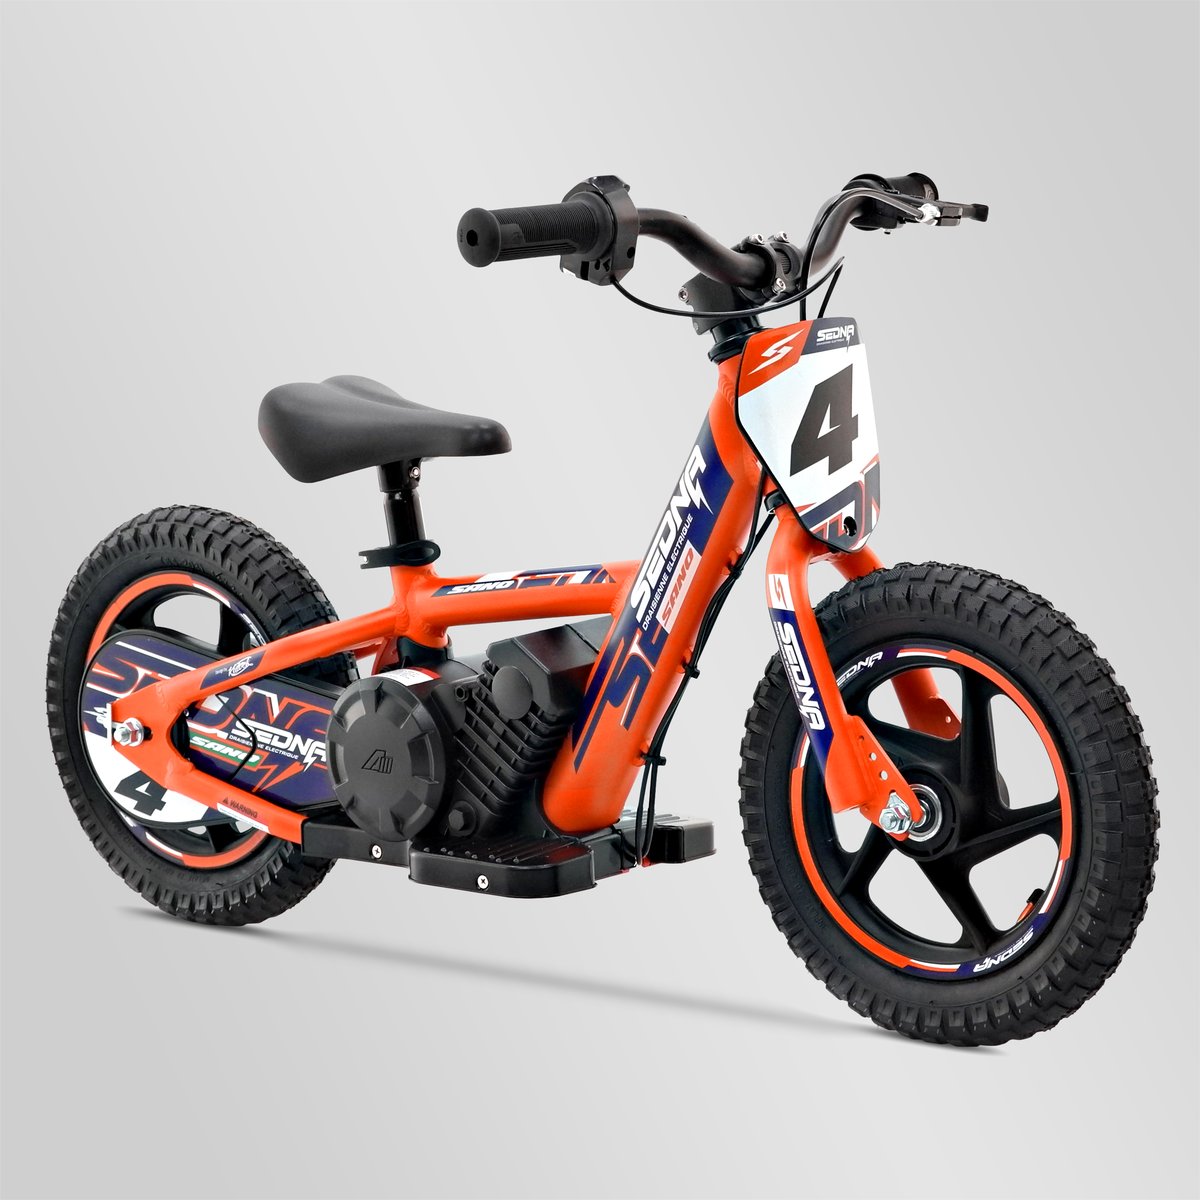 Draisienne électrique apollo rxf sedna 12" 100w, Minimoto et Dirt Bike |  Smallmx - Dirt bike, Pit bike, Quads, Minimoto